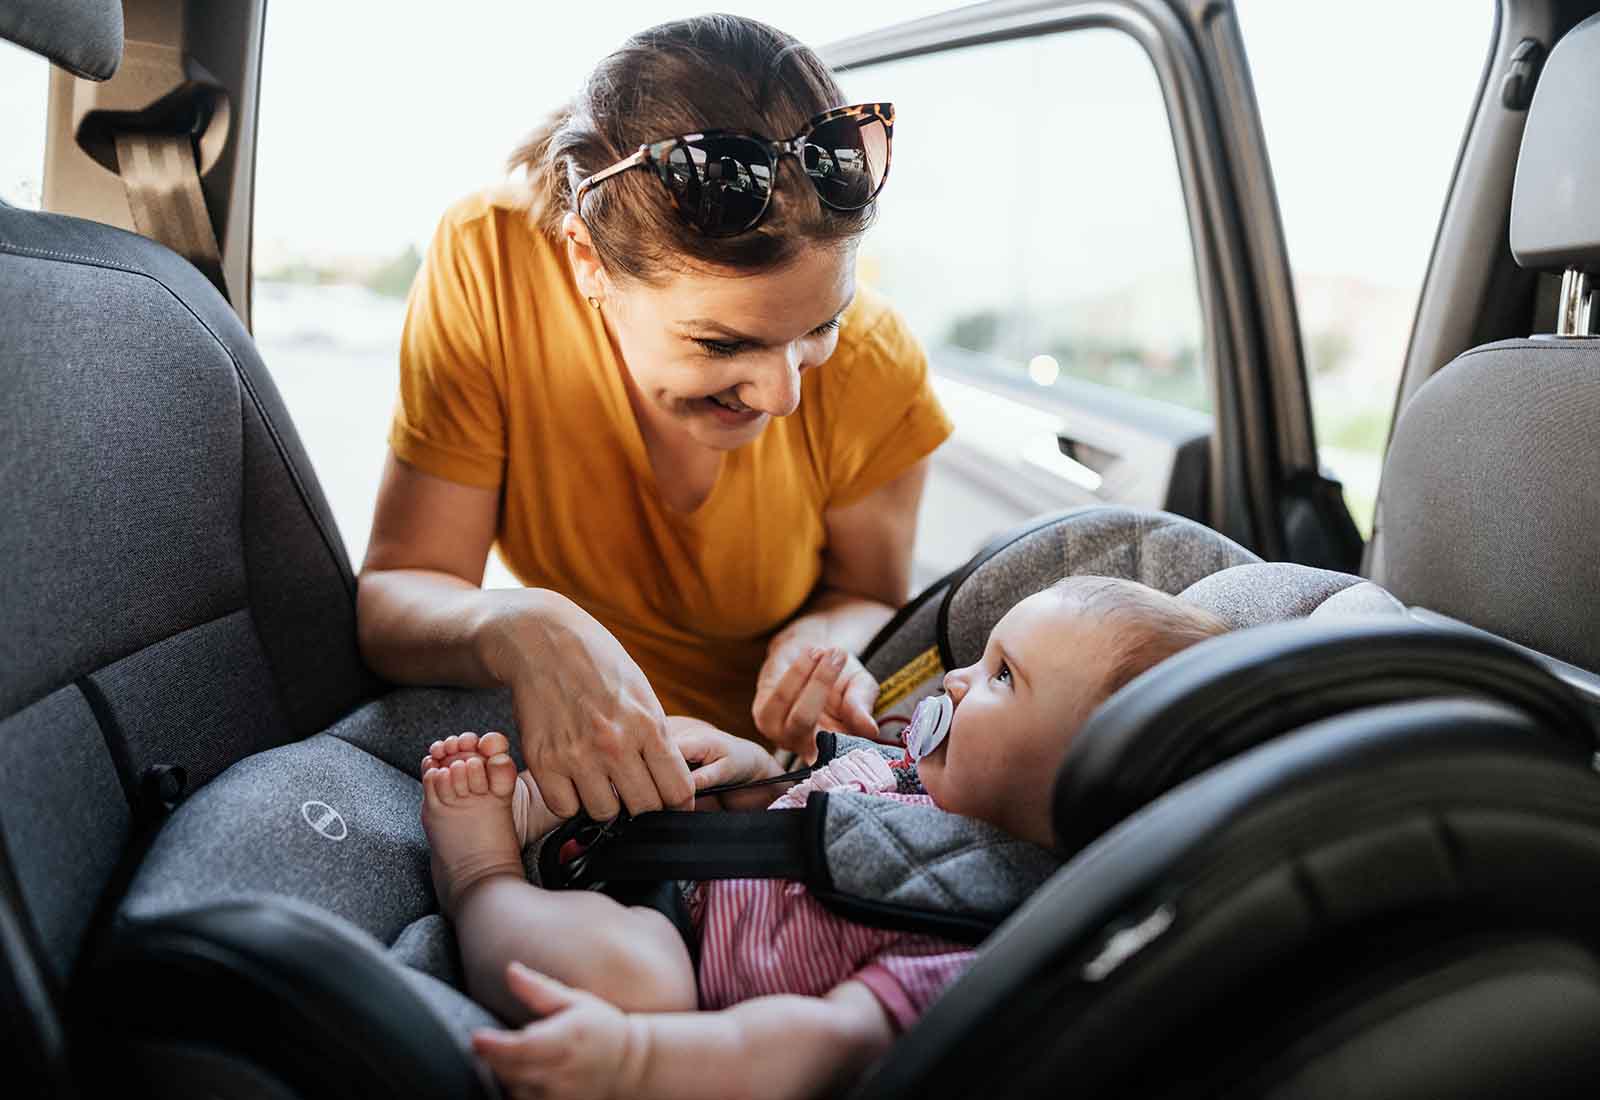 La mejor forma de llevar a un recién nacido en el coche